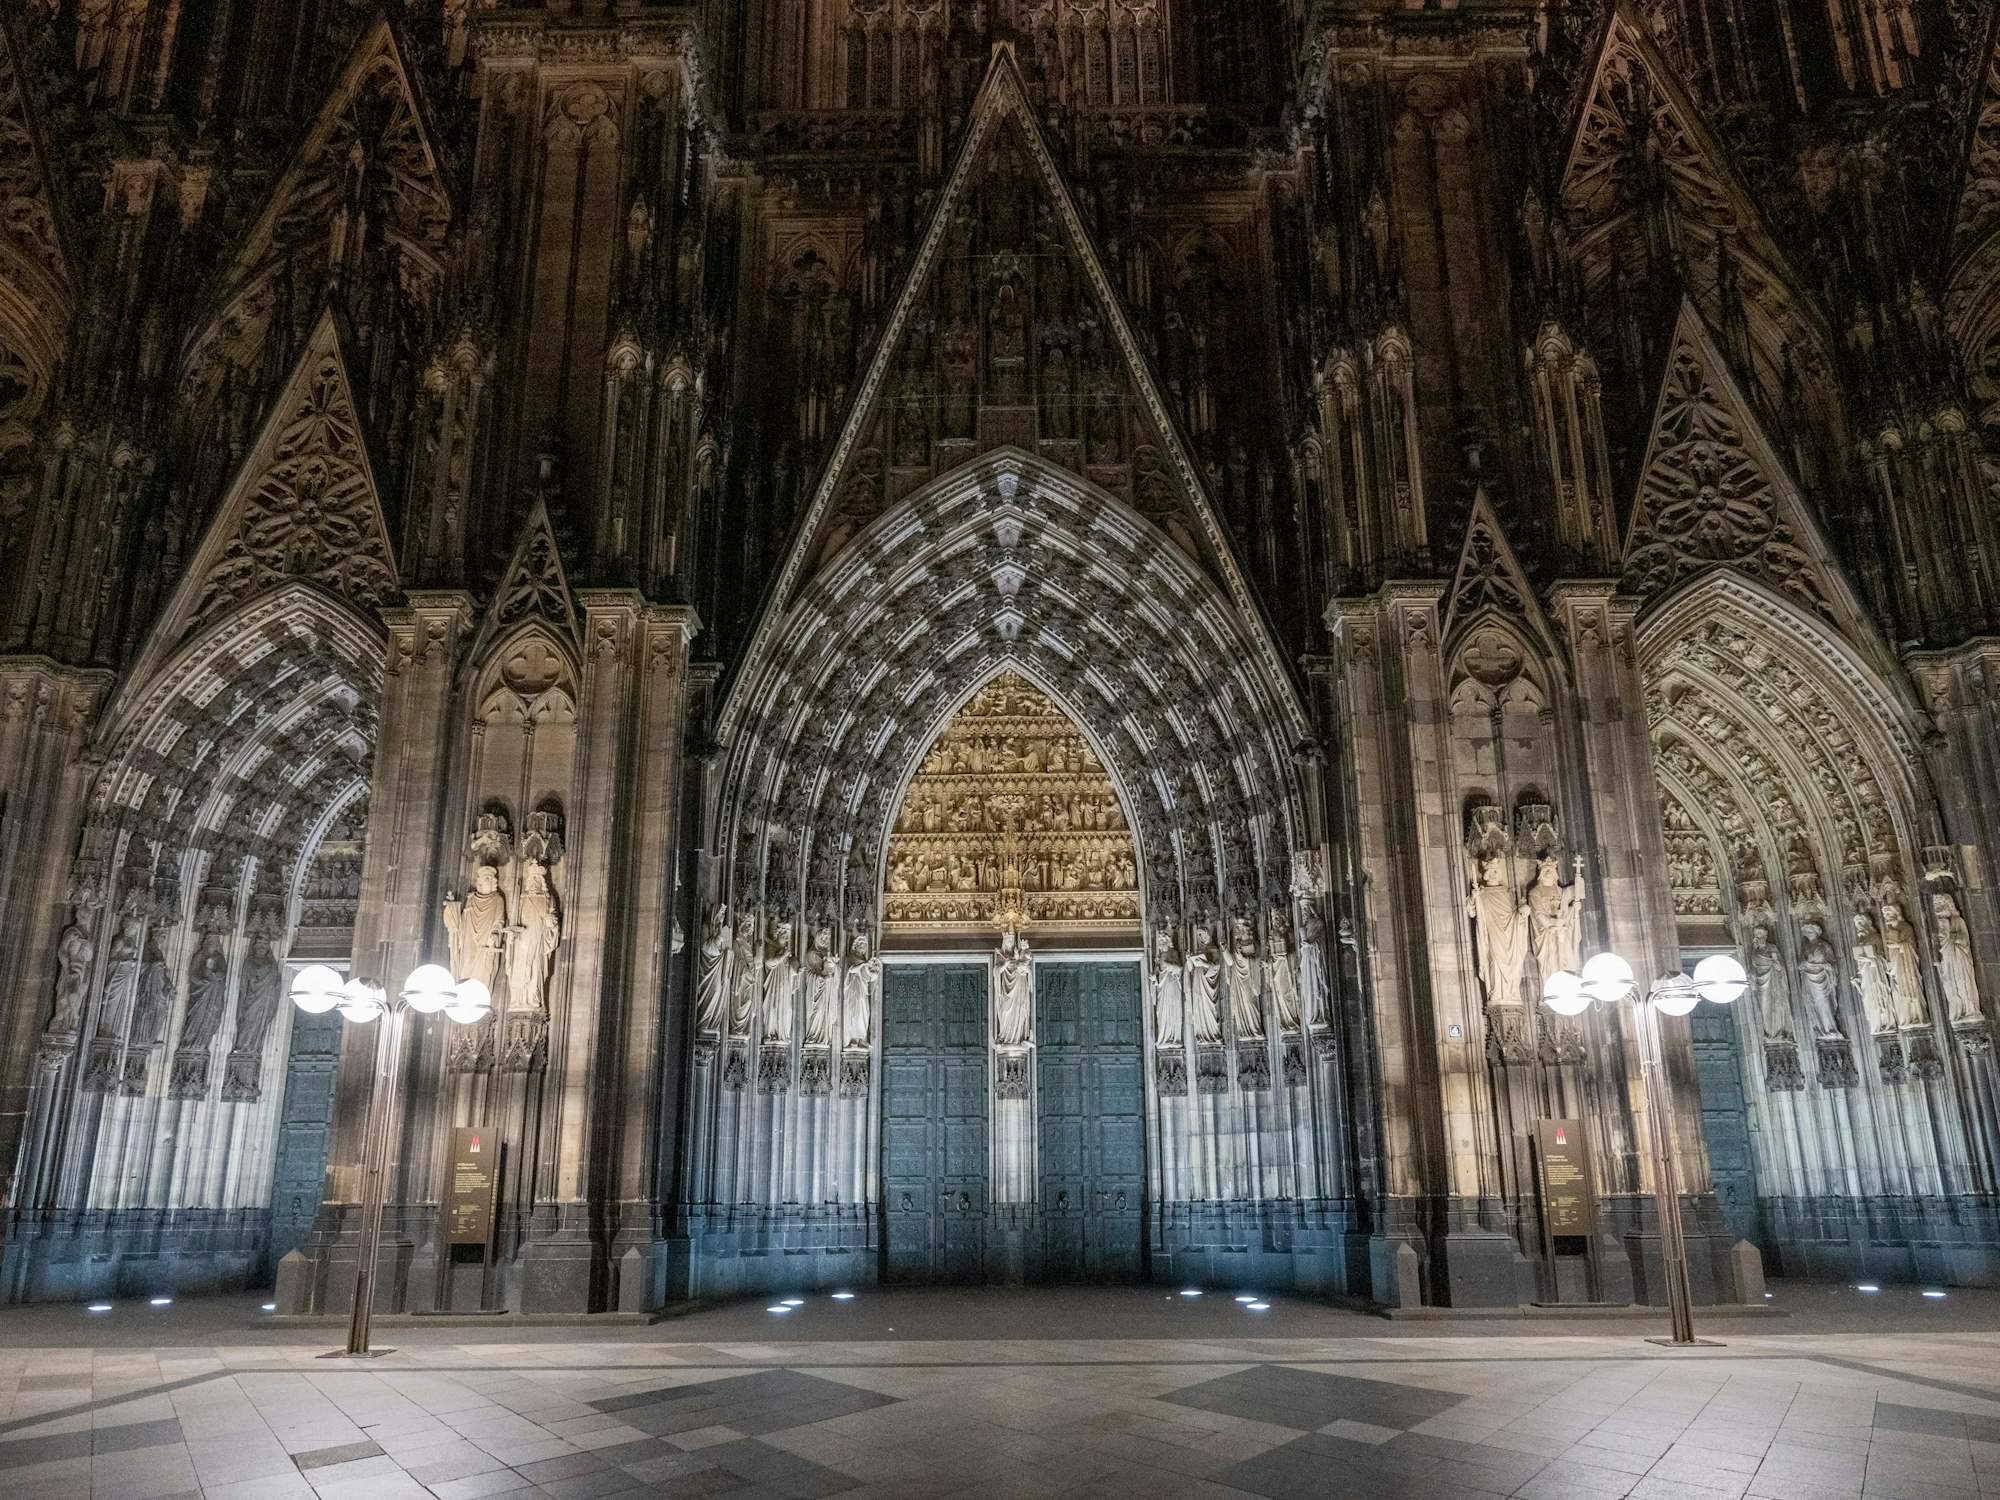 Ein neues, zusammen mit einem Expertenbüro erarbeitetes Lichtkonzept, soll nun zudem dafür sorgen, dass die Kathedrale in ihrer Dreidimensionalität besser zur Geltung kommt.